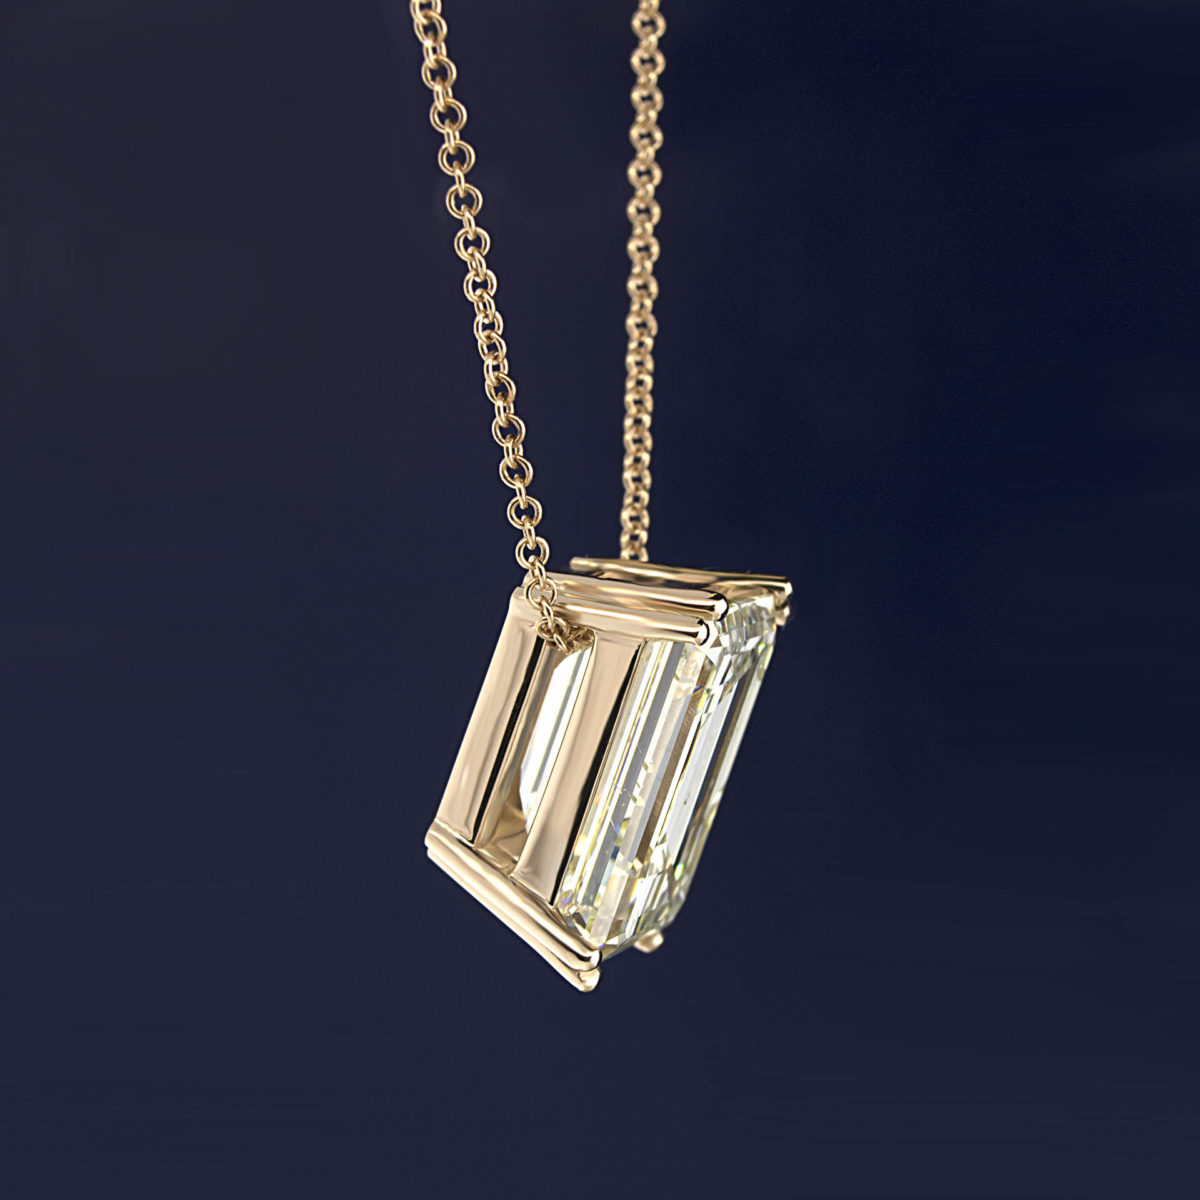 Emerald Cut Diamond Necklace Pendant PN1001 5 1200x1200 